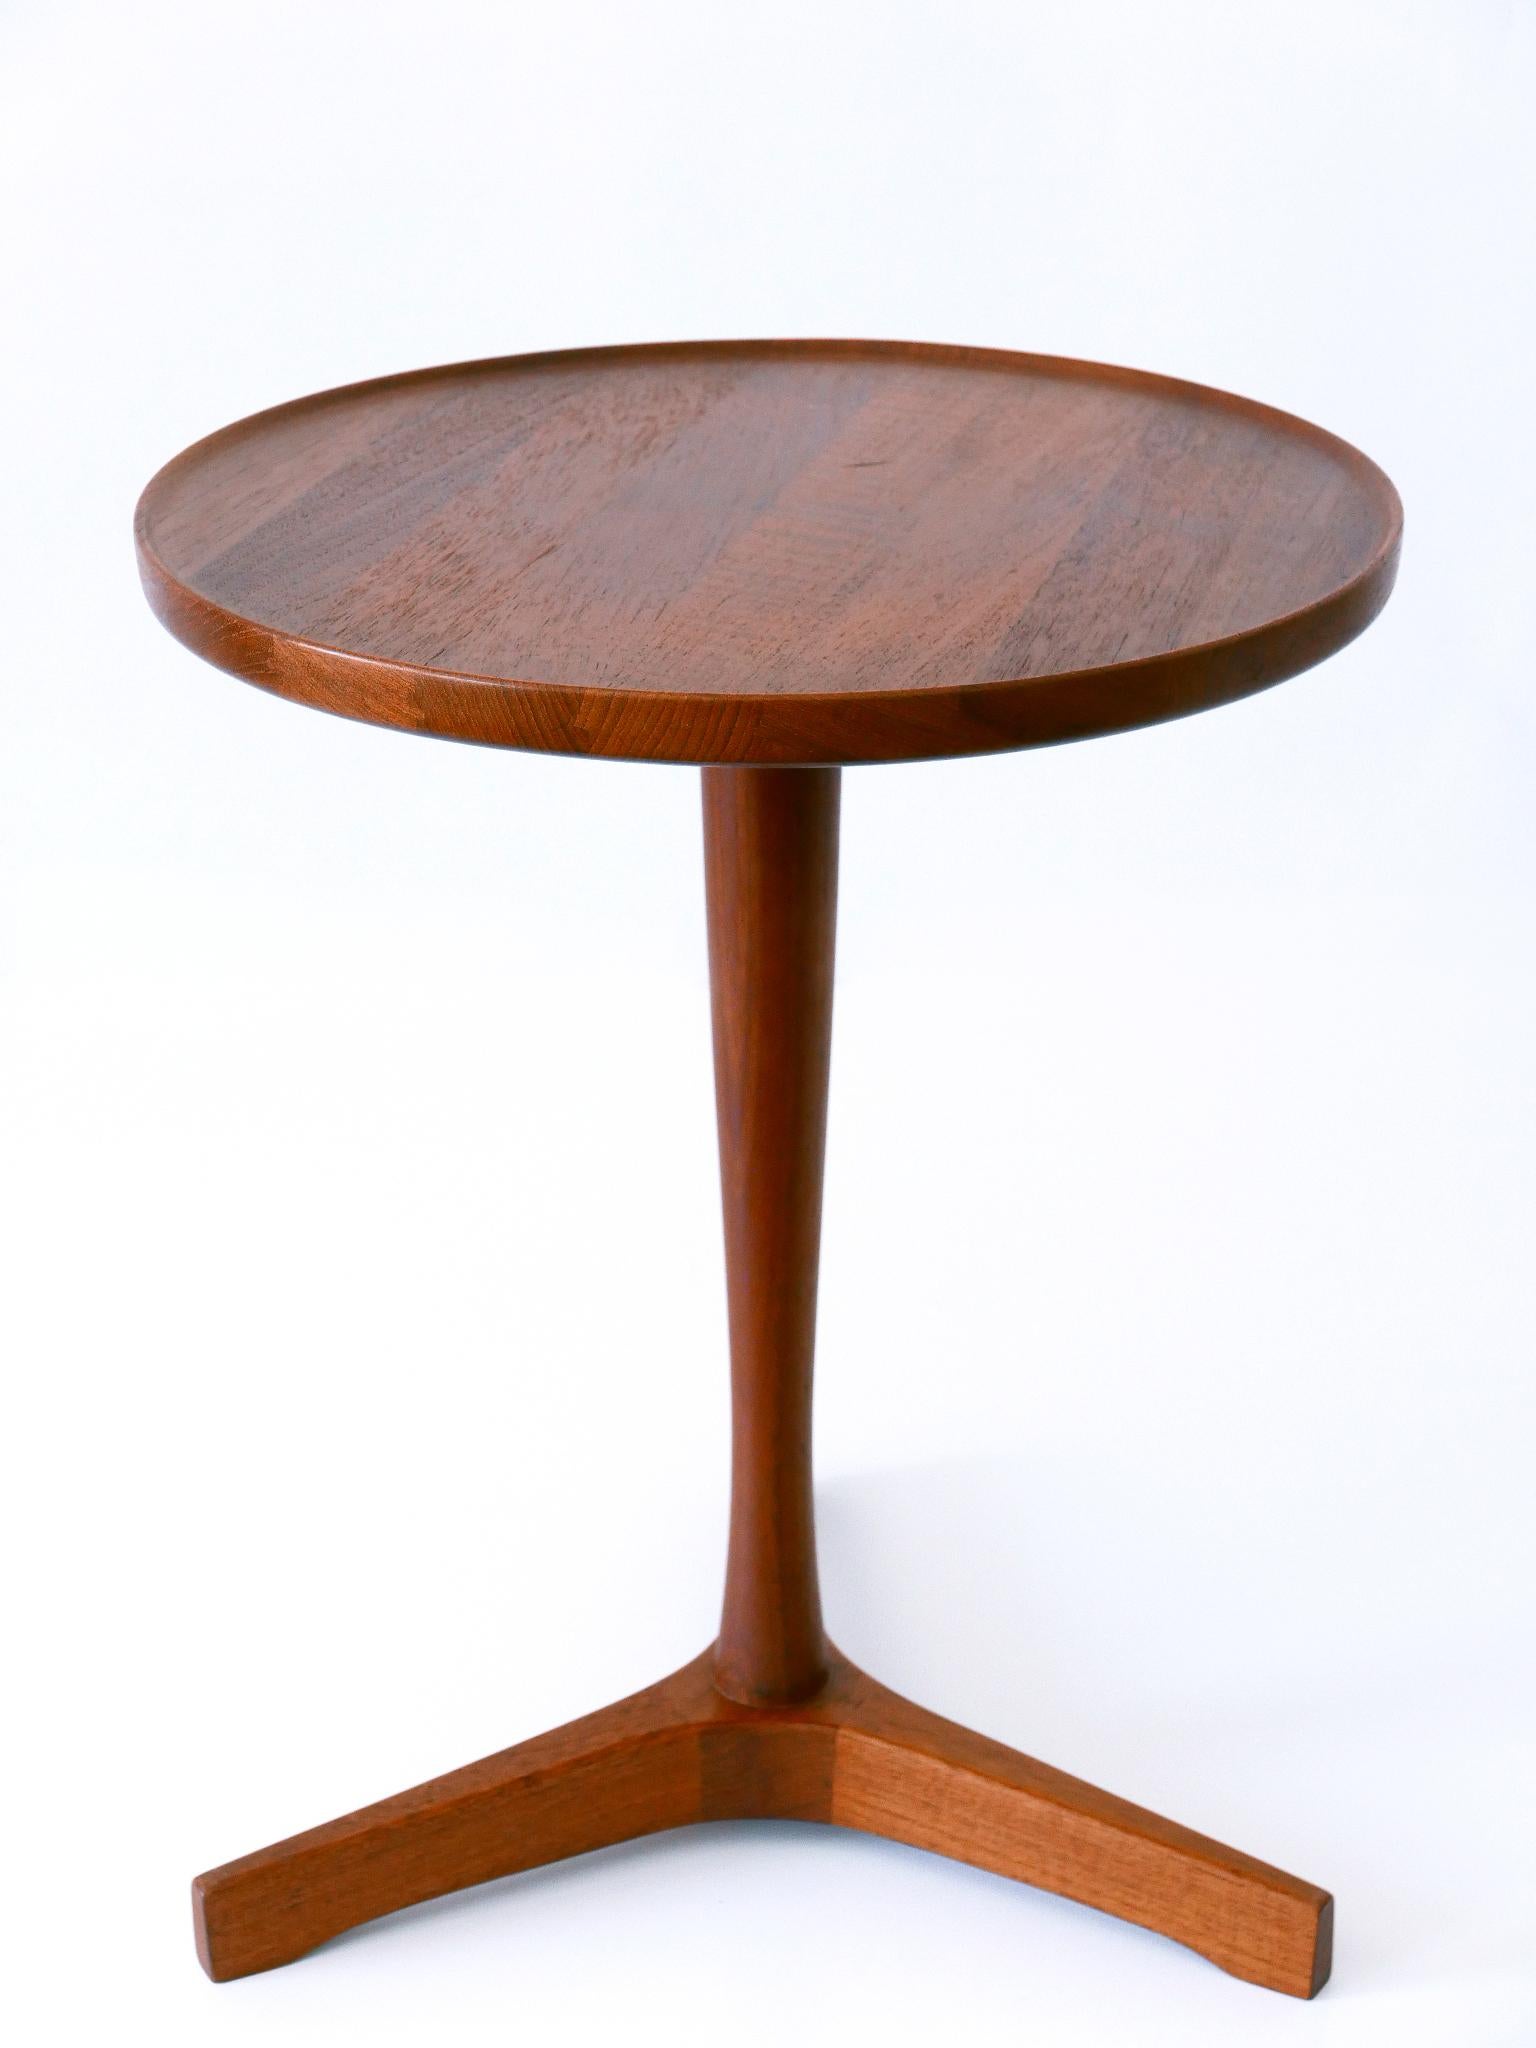 Elegant Mid-Century Modern Teak Side Table by Hans C. Andersen for Artek 1960s For Sale 4